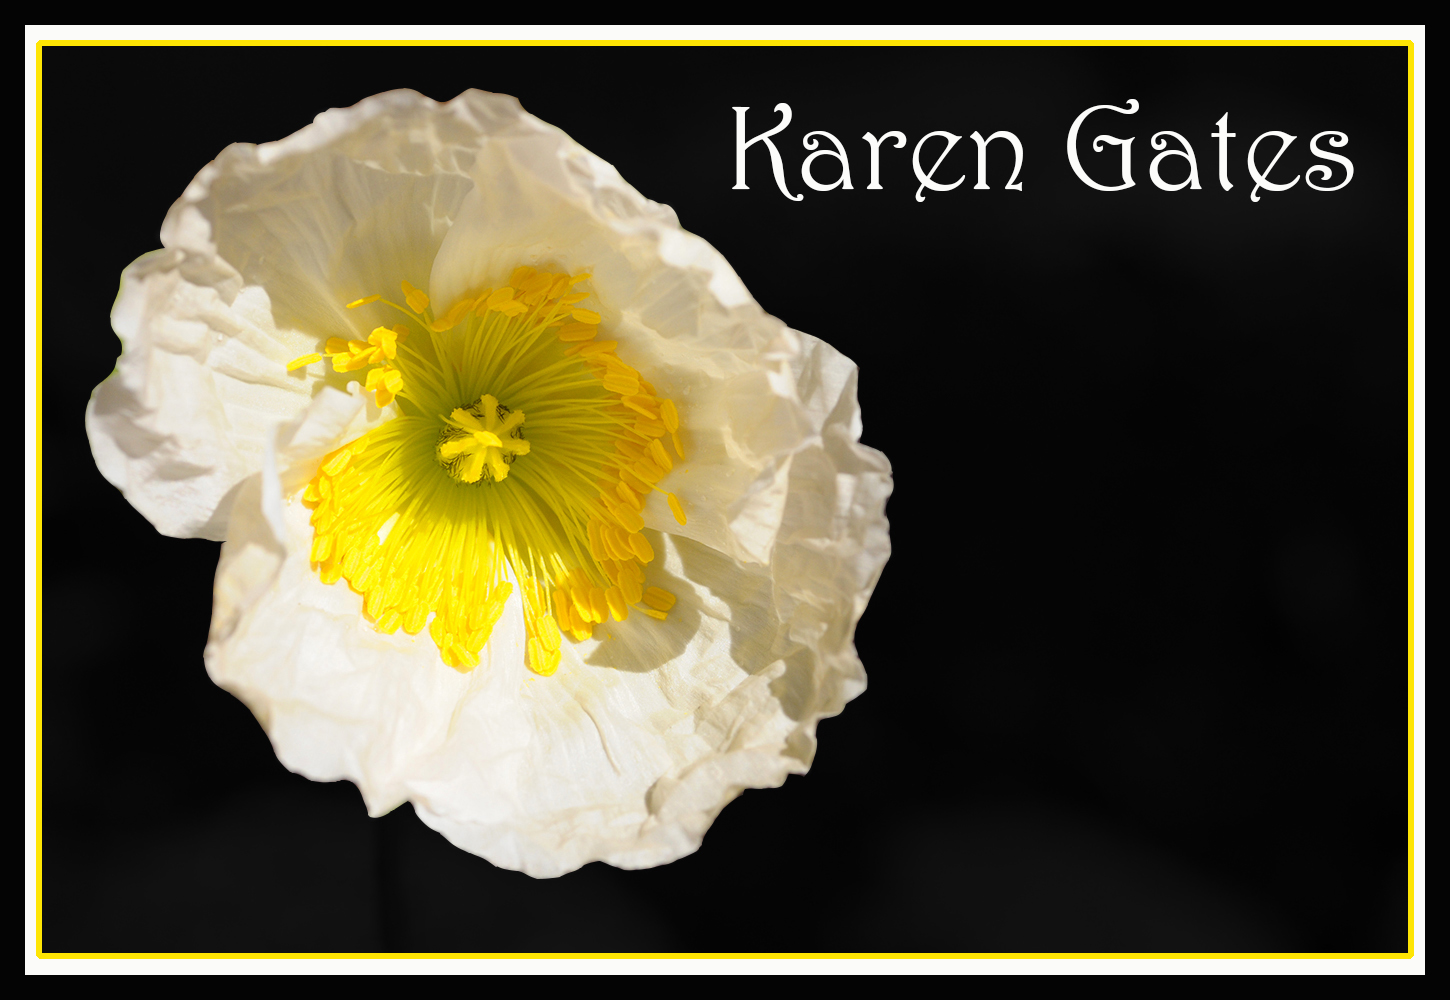 Karen Gates